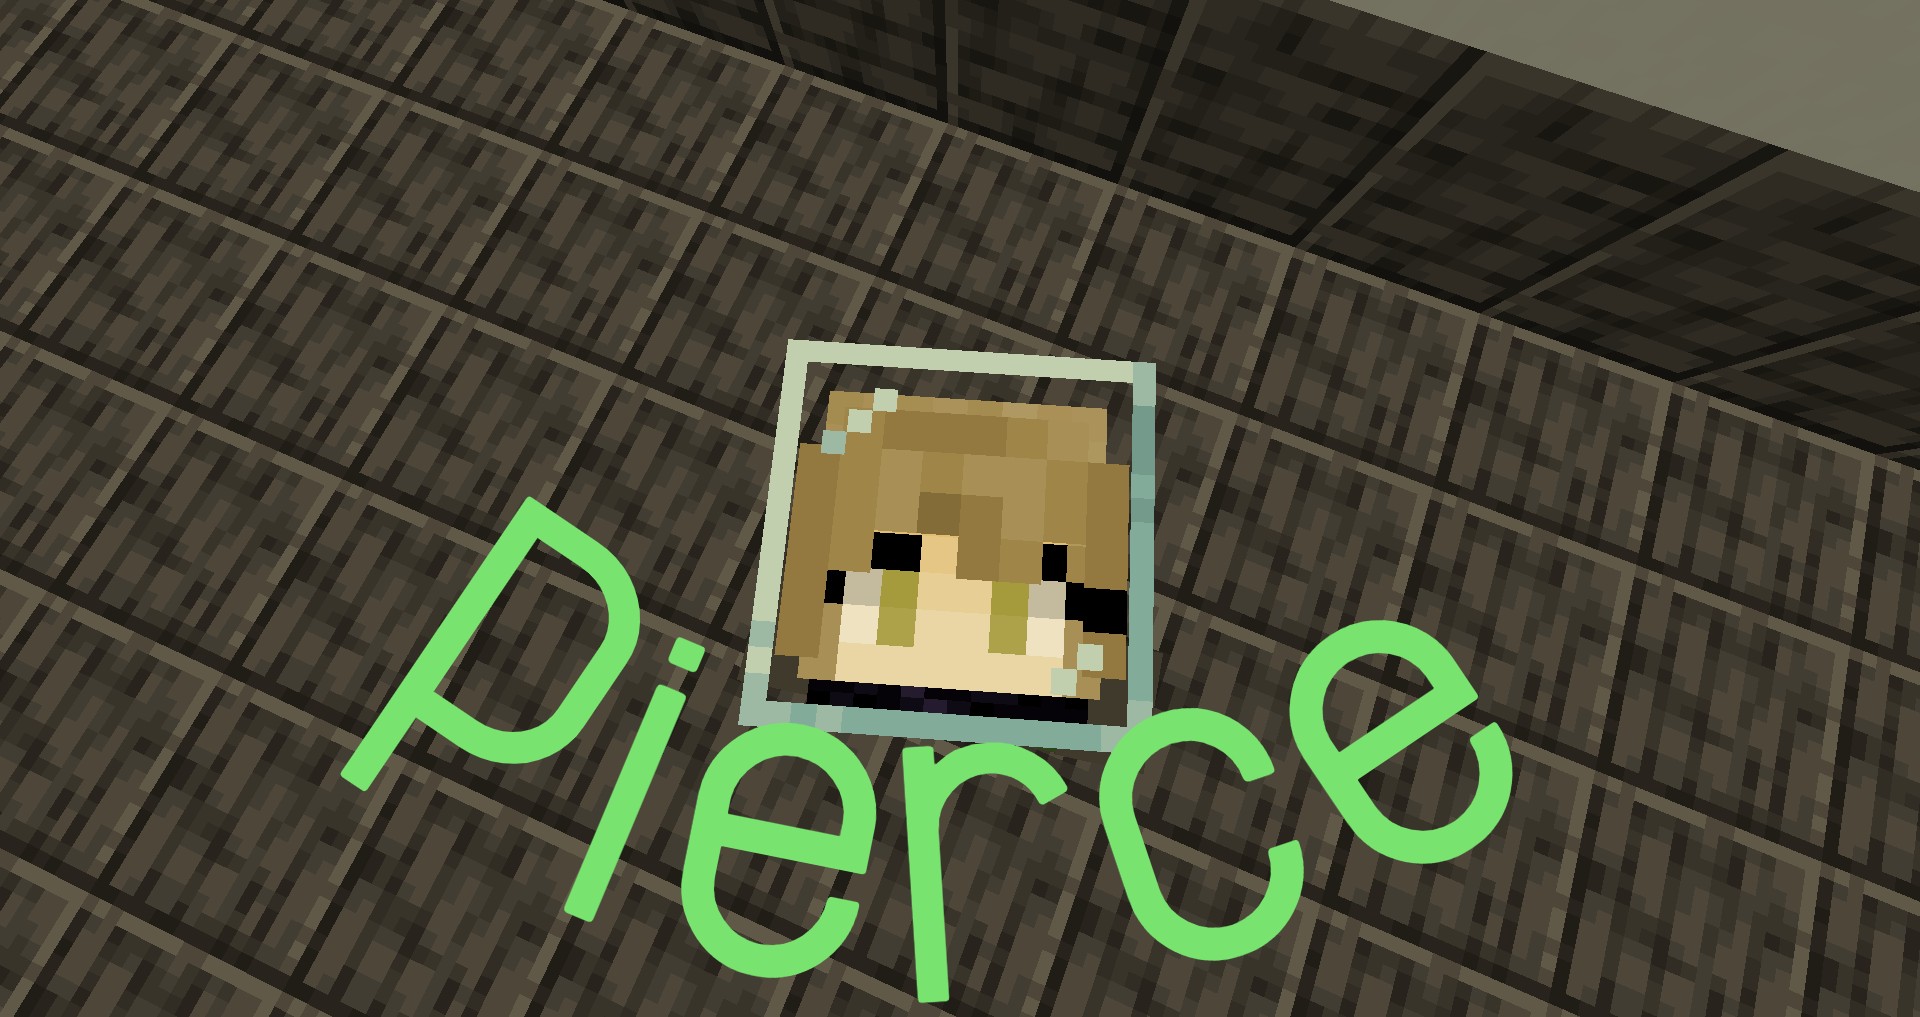 Скачать Pierce для Minecraft 1.17.1